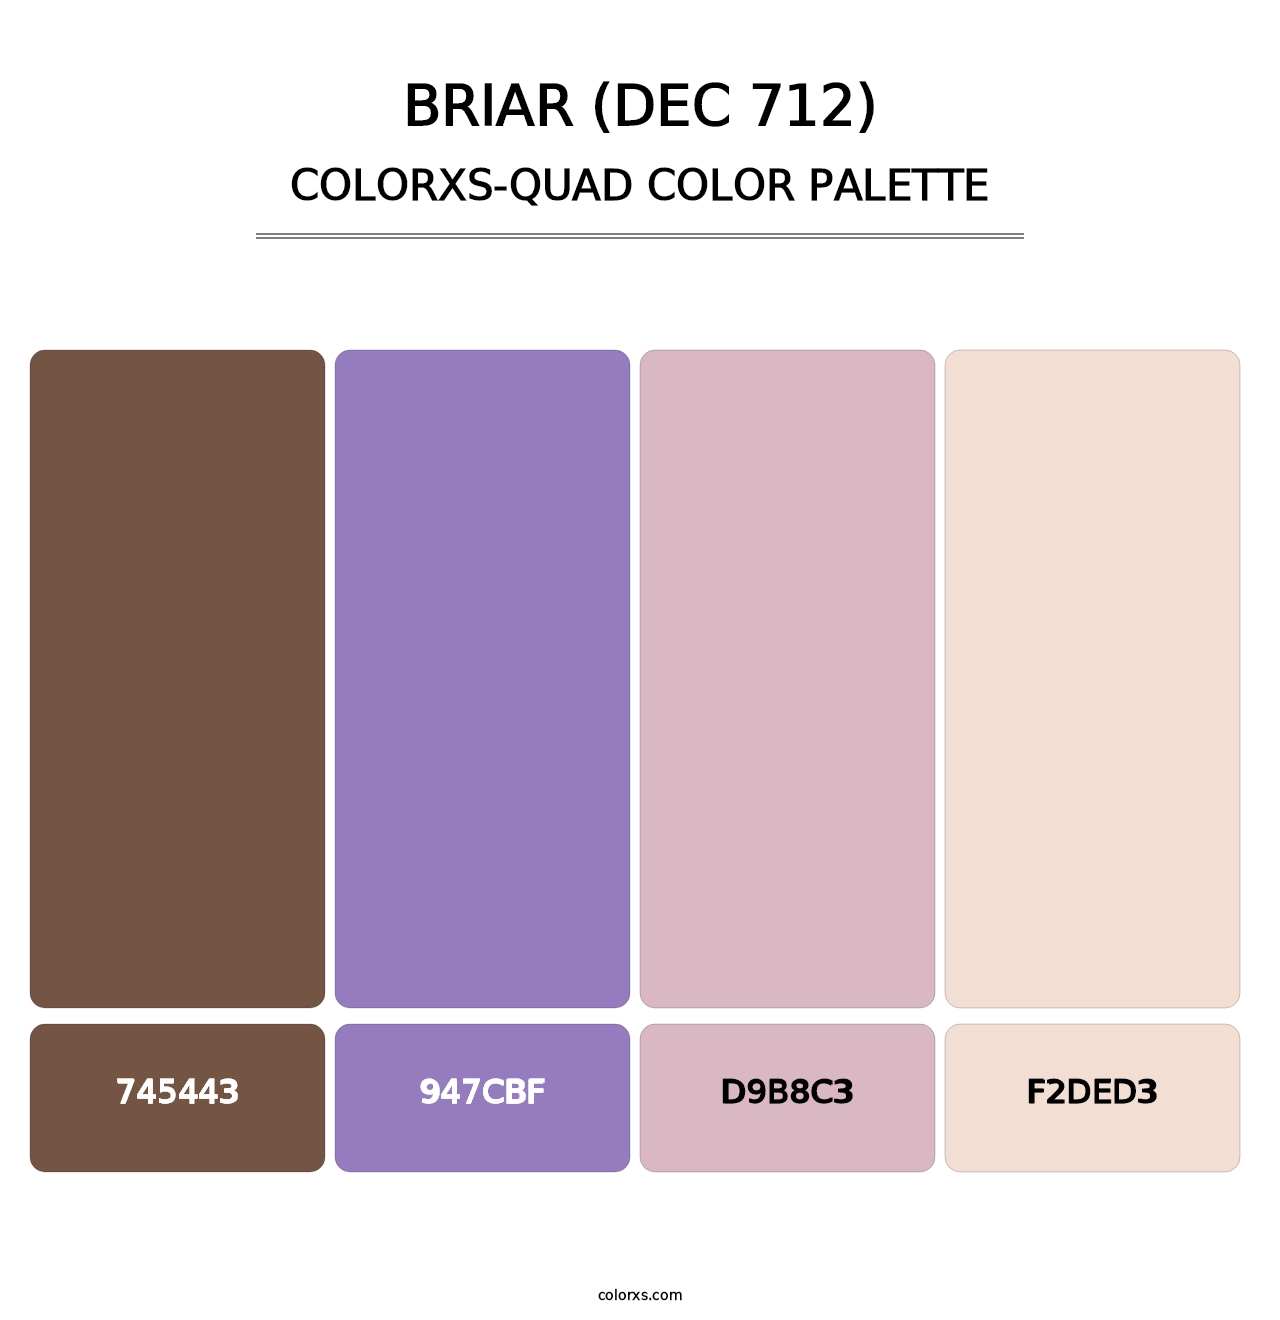 Briar (DEC 712) - Colorxs Quad Palette